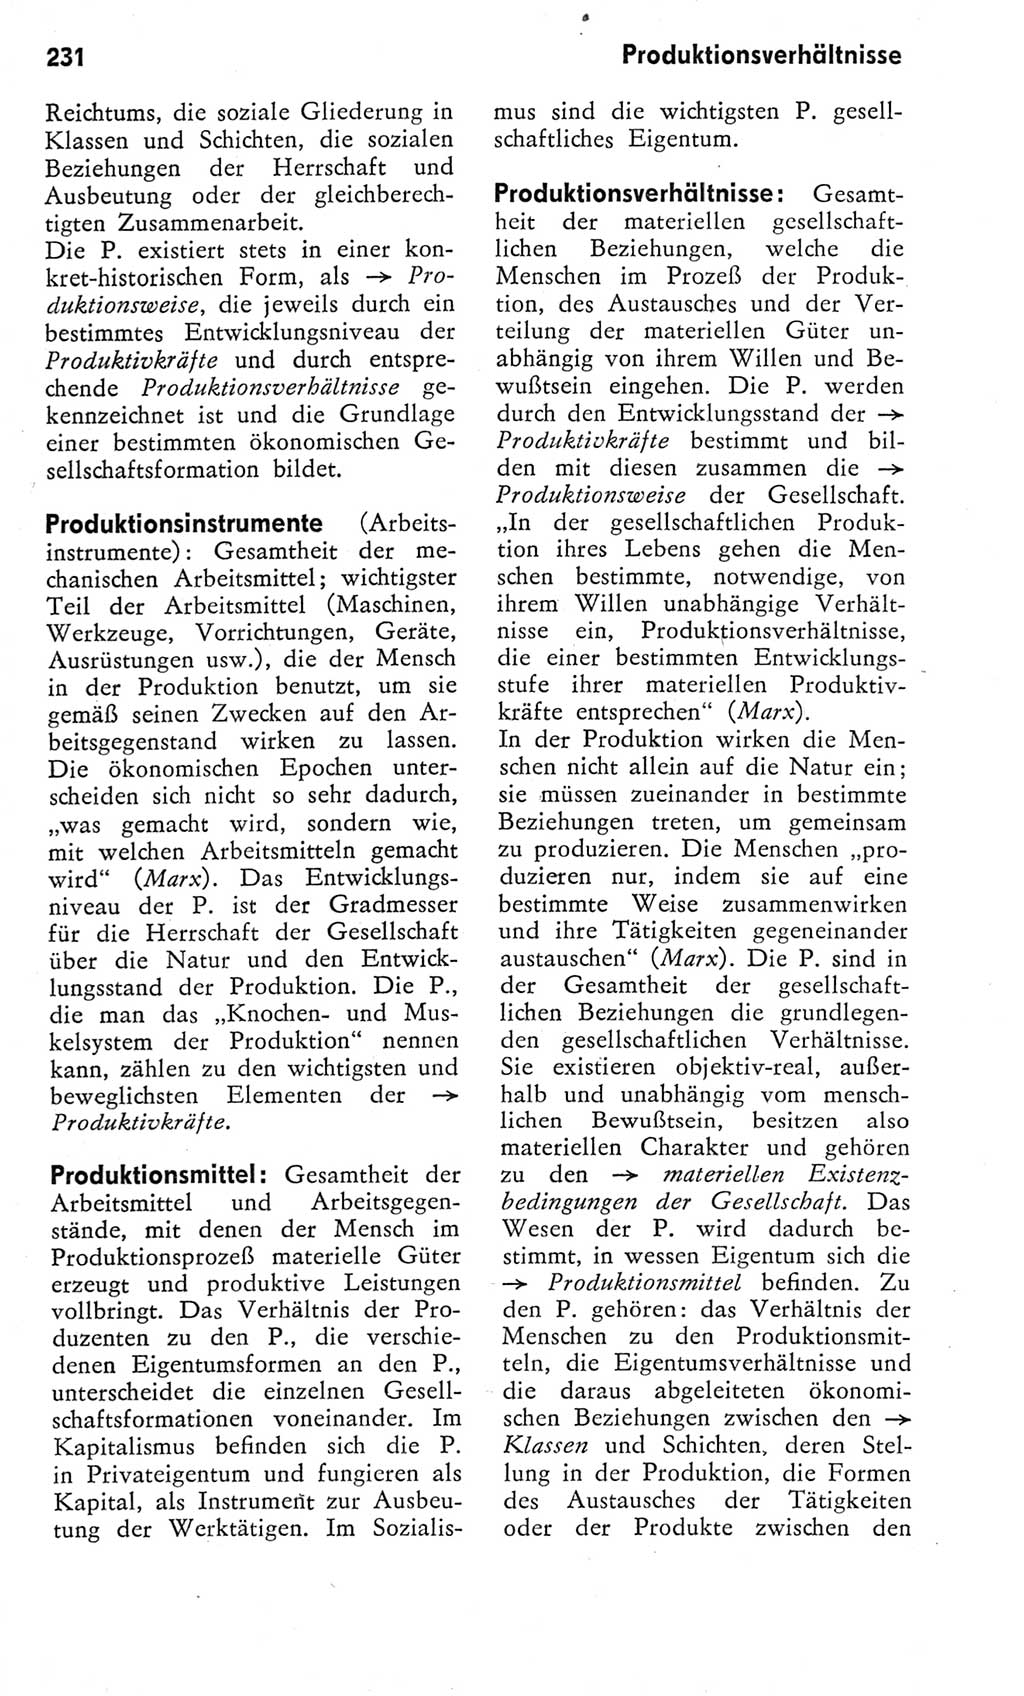 Kleines Wörterbuch der marxistisch-leninistischen Philosophie [Deutsche Demokratische Republik (DDR)] 1975, Seite 231 (Kl. Wb. ML Phil. DDR 1975, S. 231)